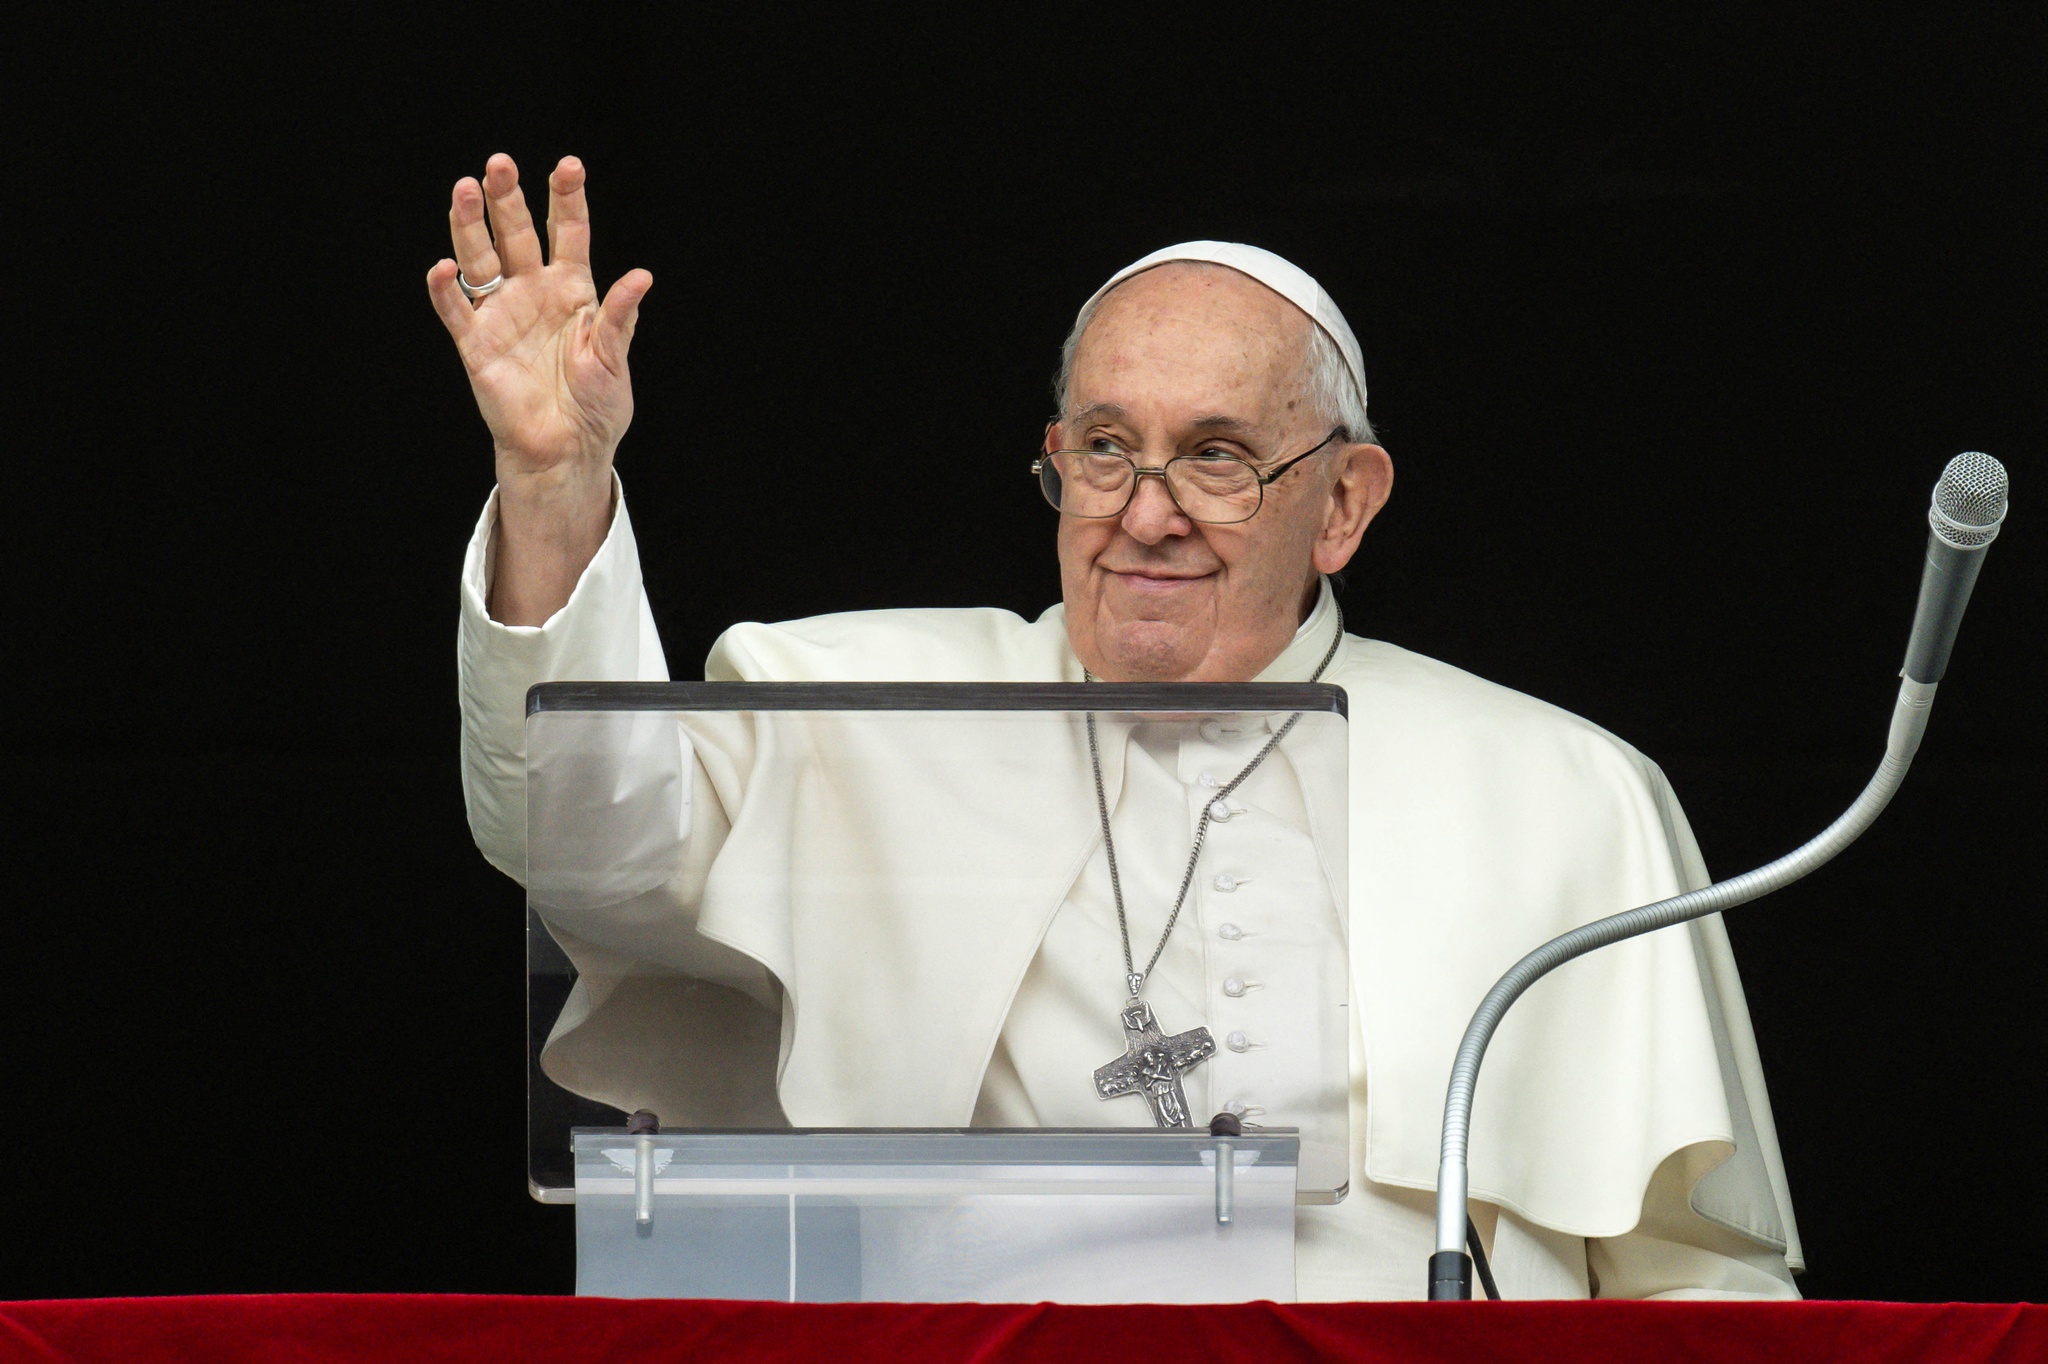 Cessem o fogo! Parem!”, grita o Papa para o Médio Oriente